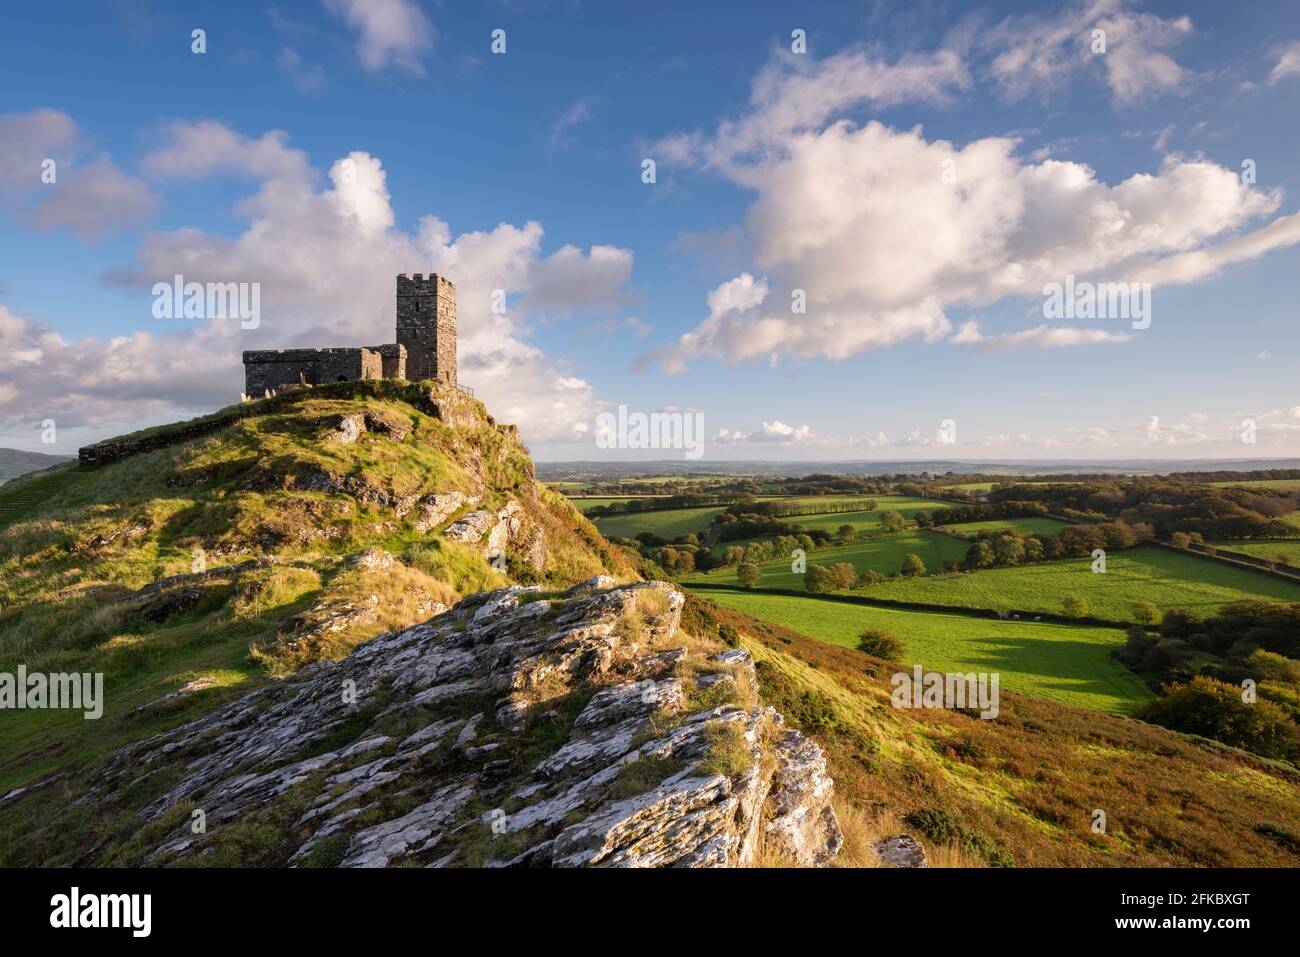 L'église lonely St. Michael de Rupe au sommet de Brentor, parc national de Dartmoor, Devon, Angleterre, Royaume-Uni, Europe Banque D'Images